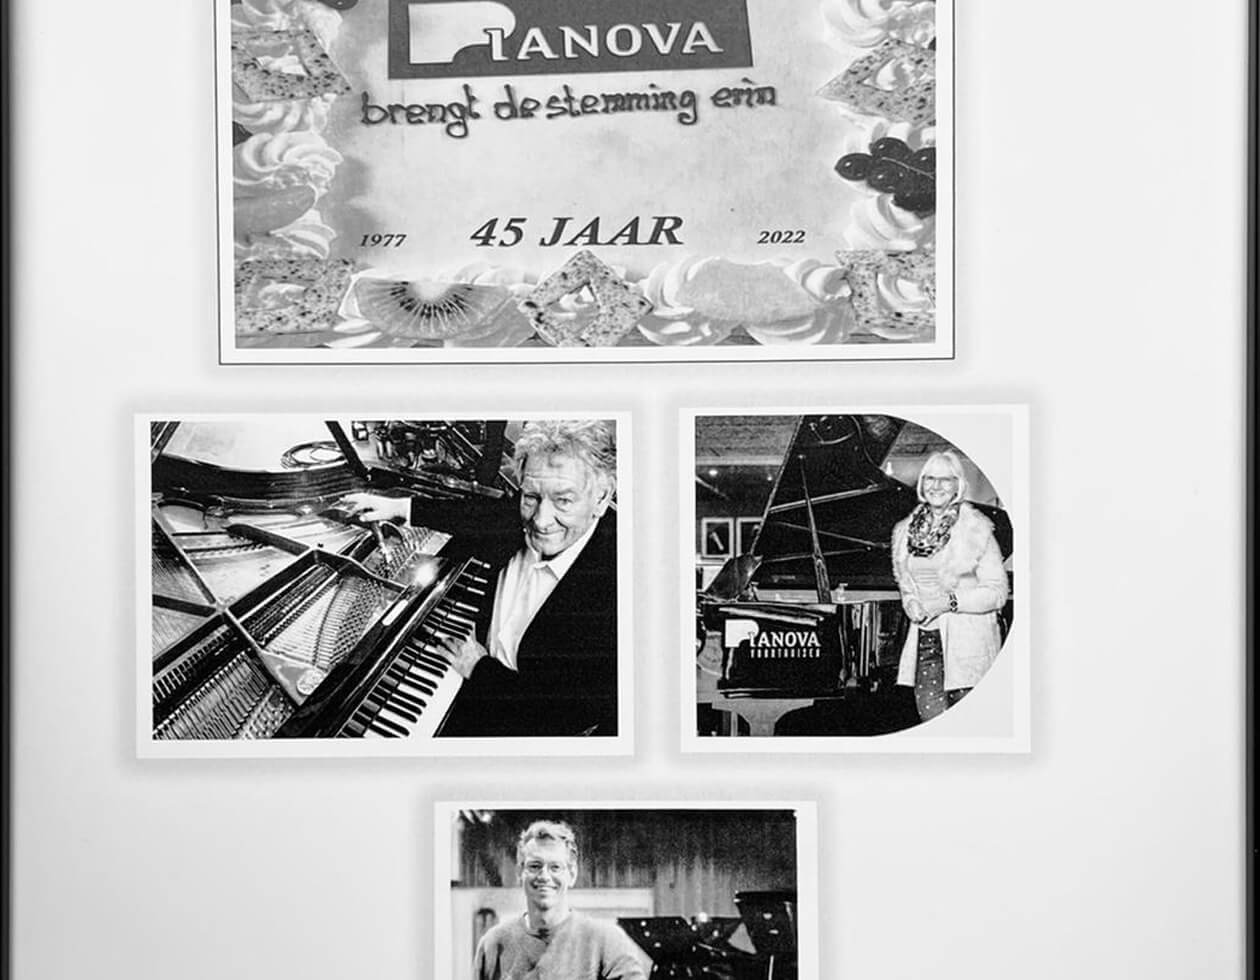 Pianova bestaat 45 jaar!